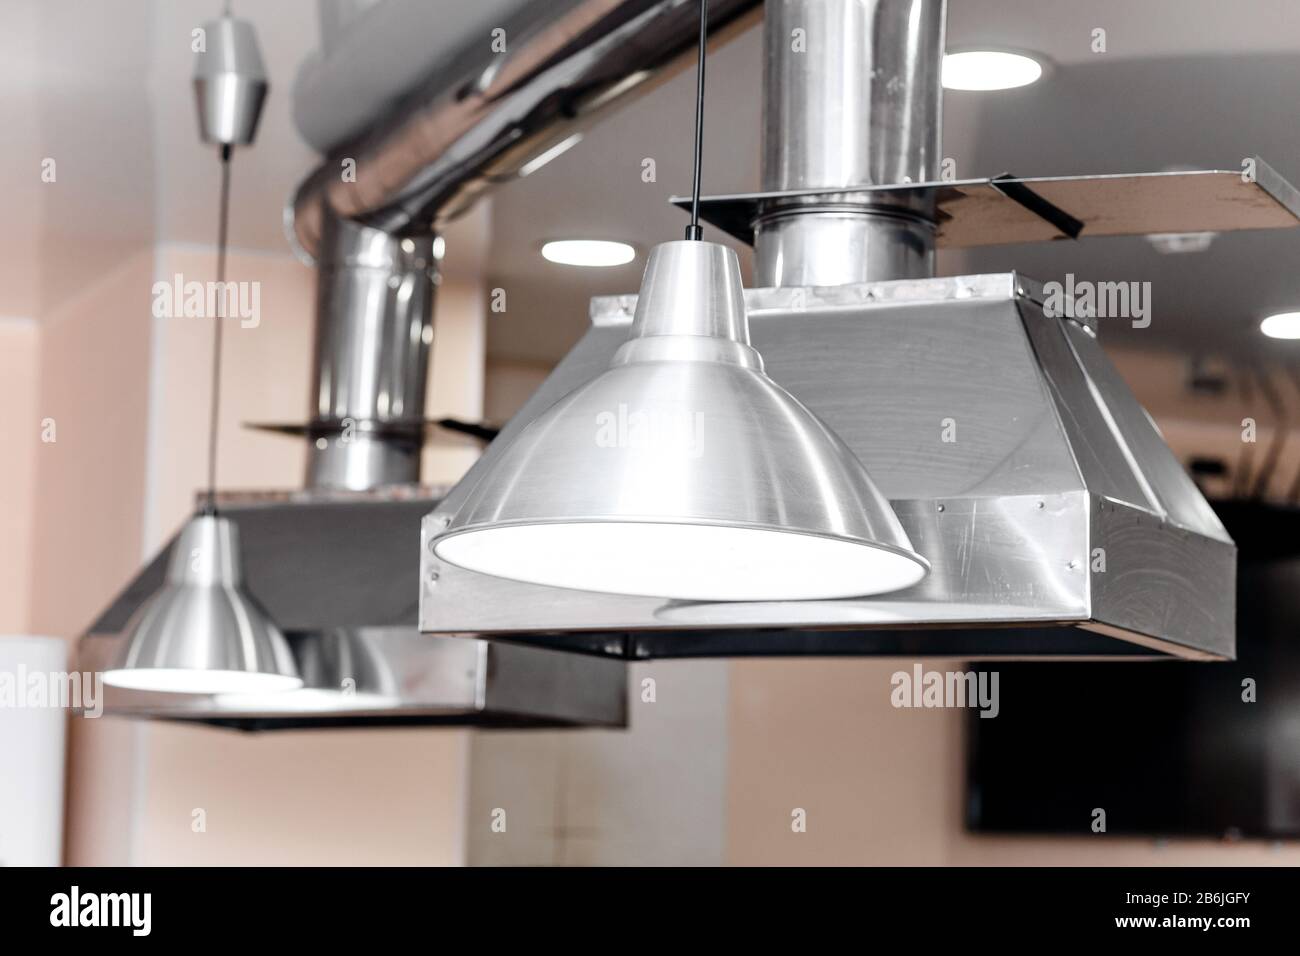 Elegante extractor de cocina de acero inoxidable en la sala de cocina del restaurante Foto de stock